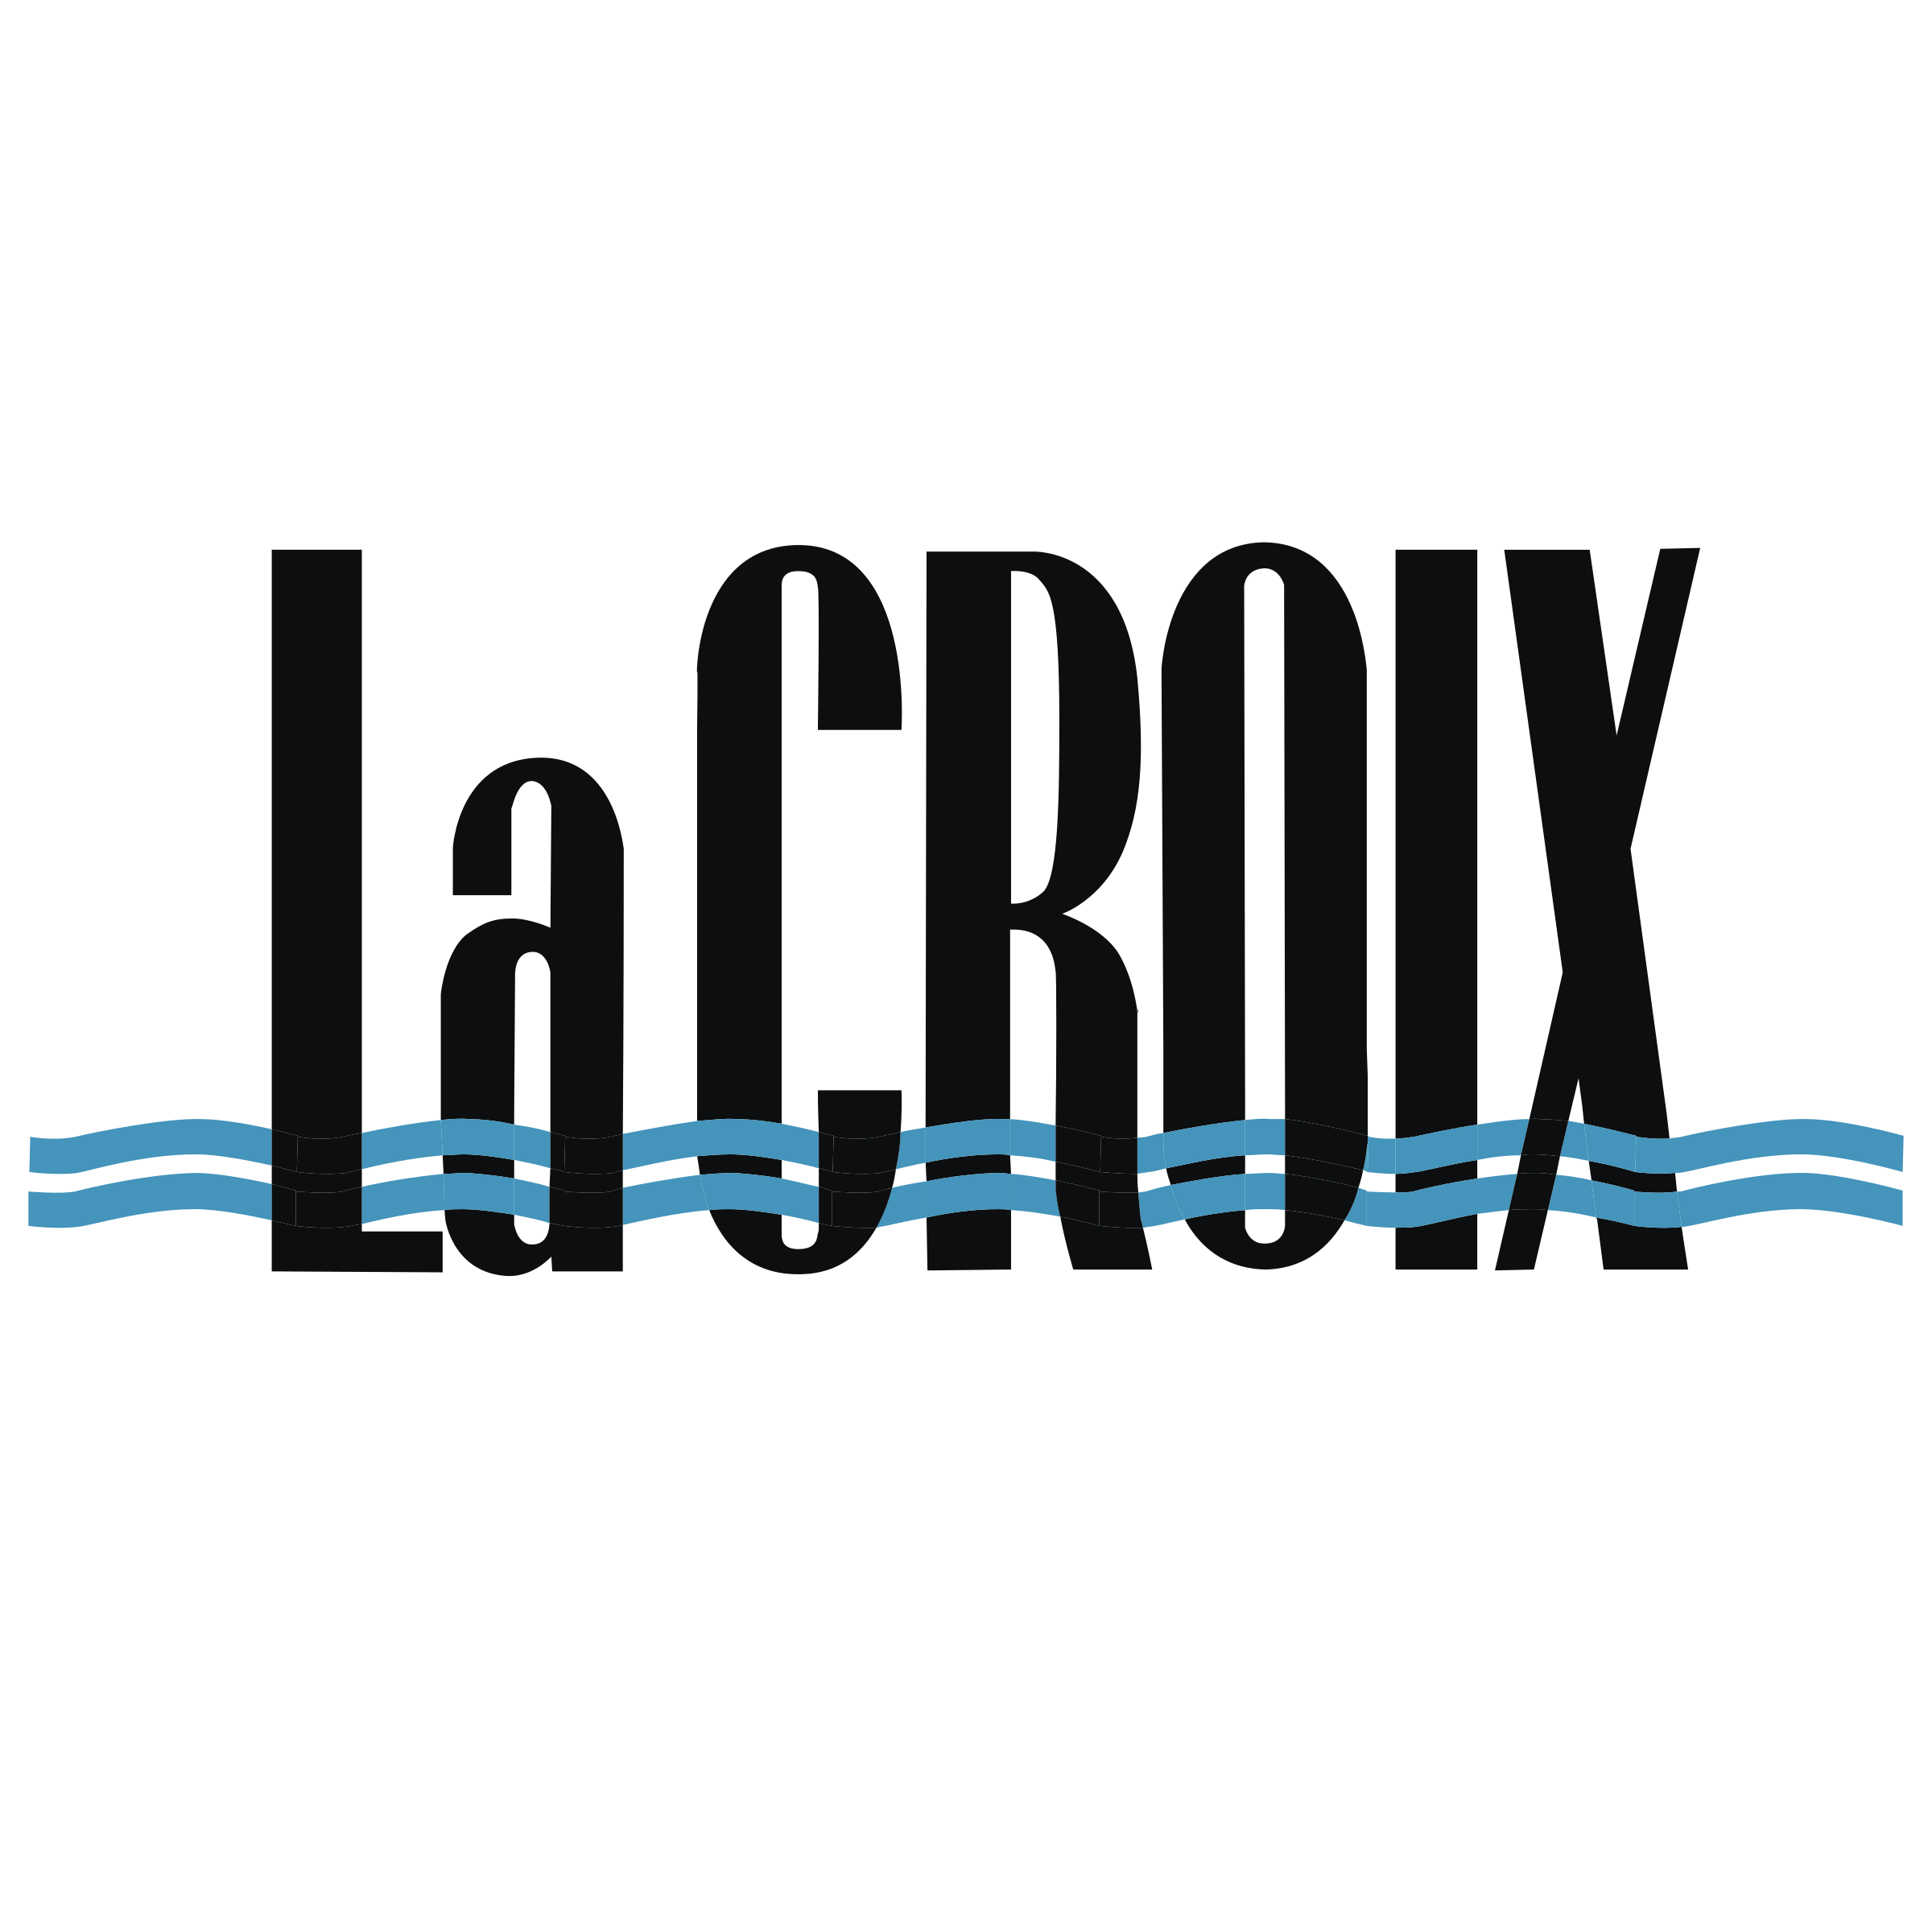 Lacroix Logo - LaCROIX Logo PNG Transparent & SVG Vector